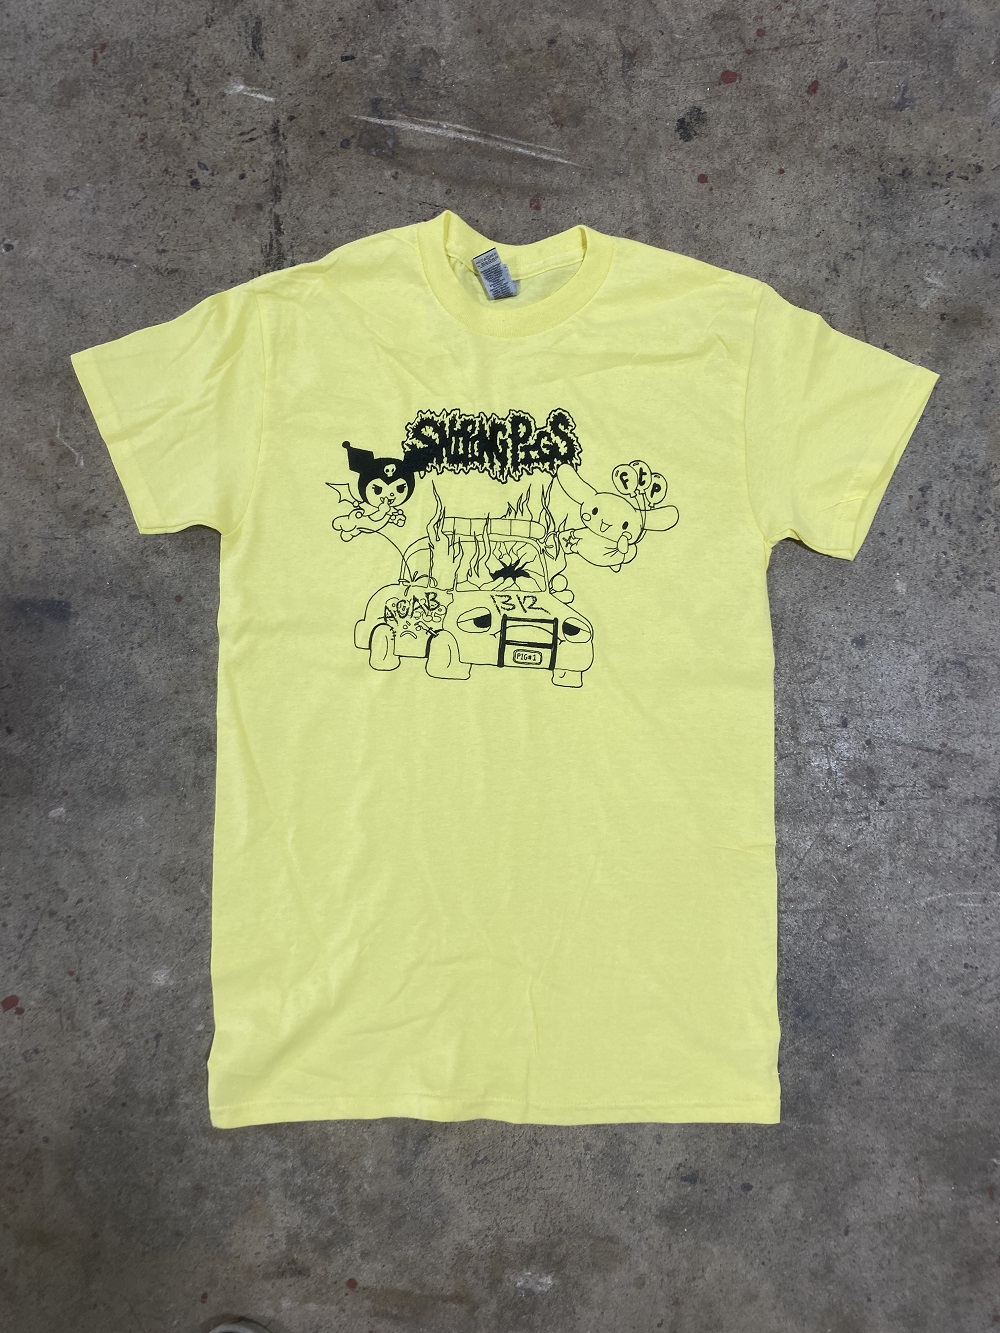 Sniping Pigs - Sanrio Car Bomb Shirt (MEDIUM)